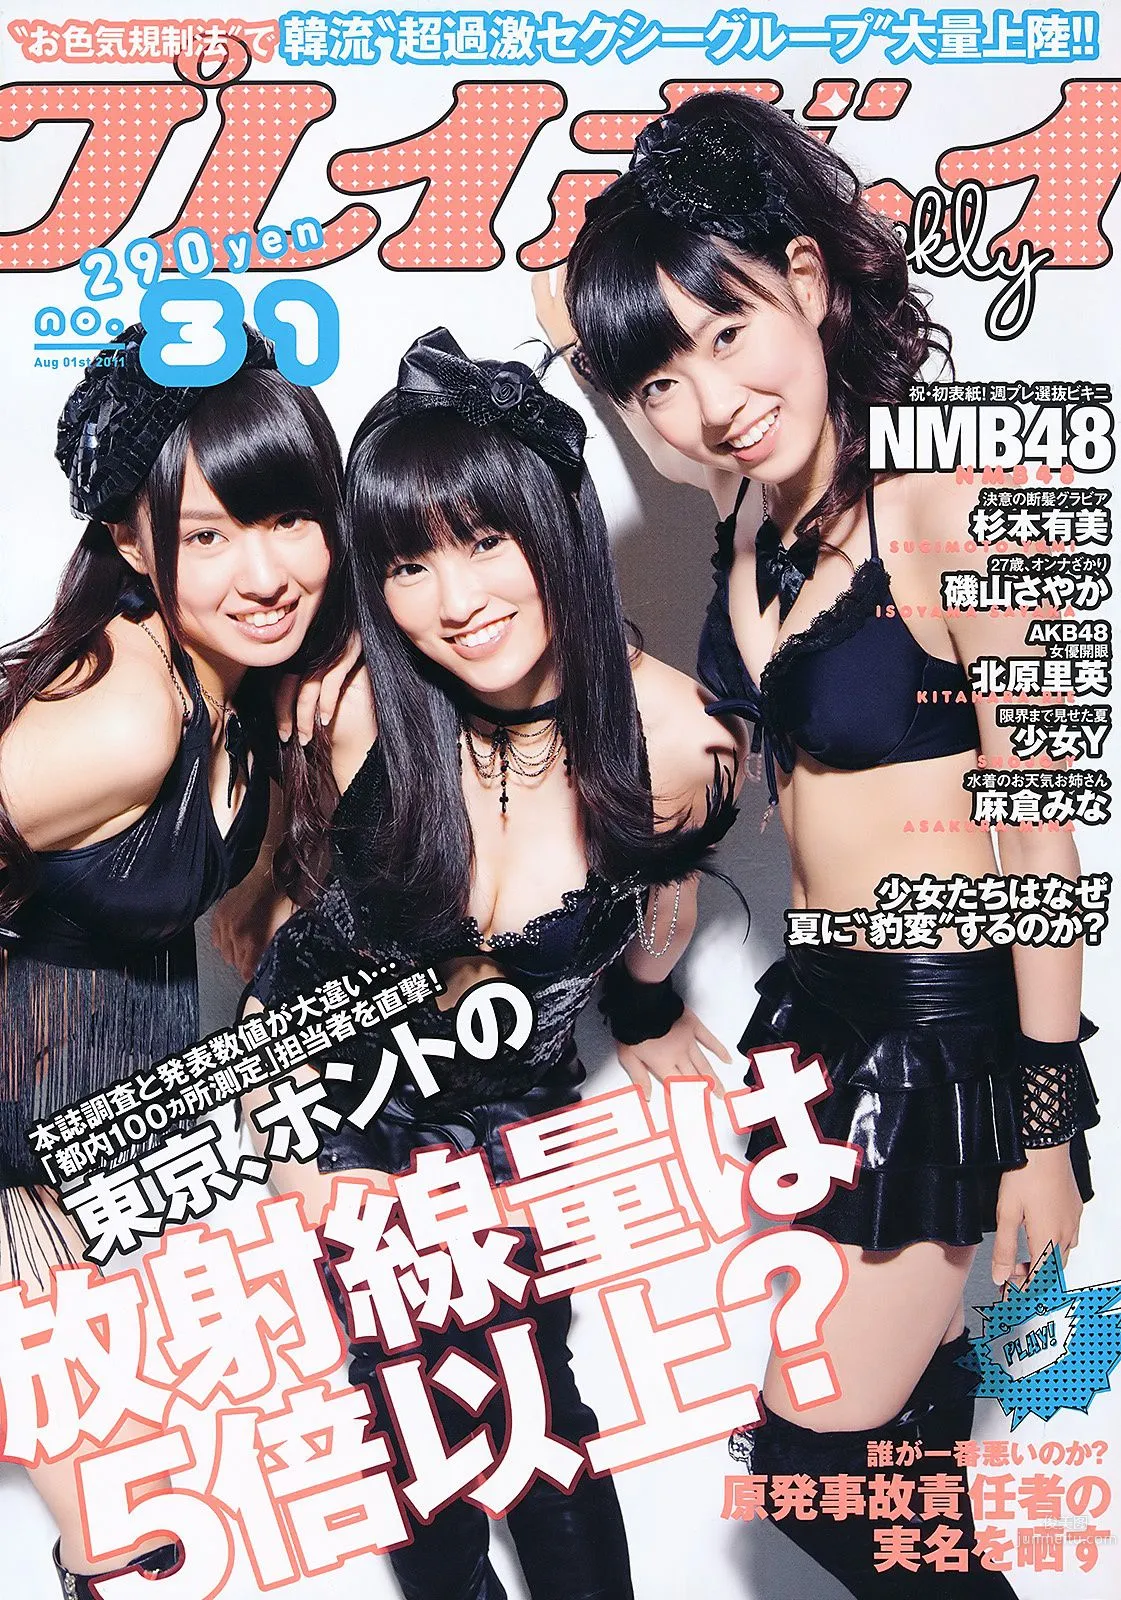 NMB48 杉本有美 北原里英 麻倉みな 磯山さやか 最上ゆき 羽田あい [Weekly Playboy] 2011年No.31 写真杂志1